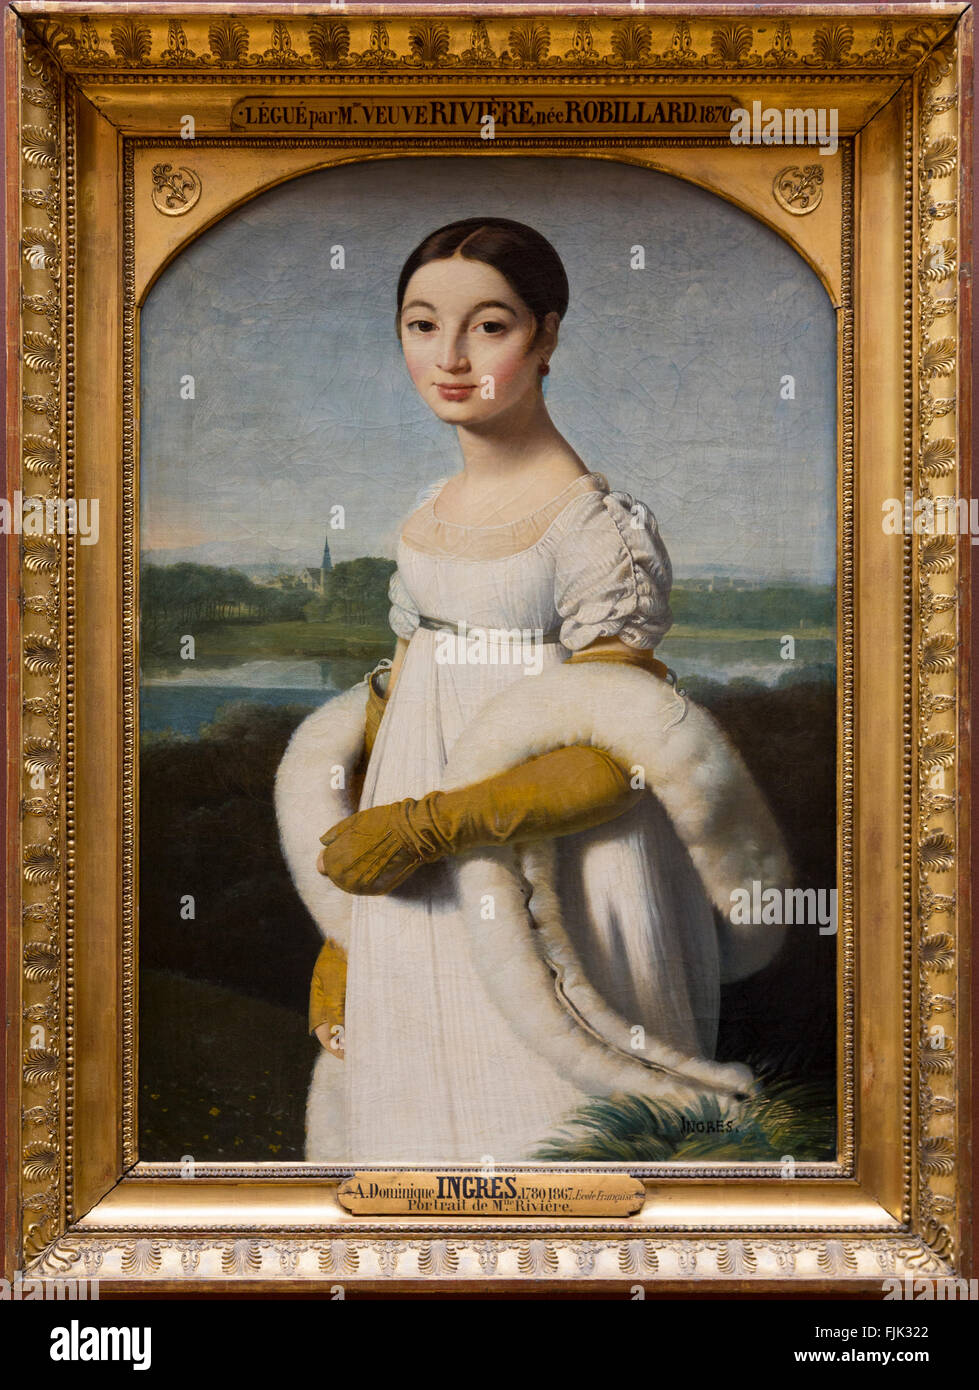 Dipinto ad Olio "Ritratto di Mademoiselle Rivière' da Dominique Ingres visualizzati in una cornice dorata, il museo del Louvre, Parigi, Francia Foto Stock